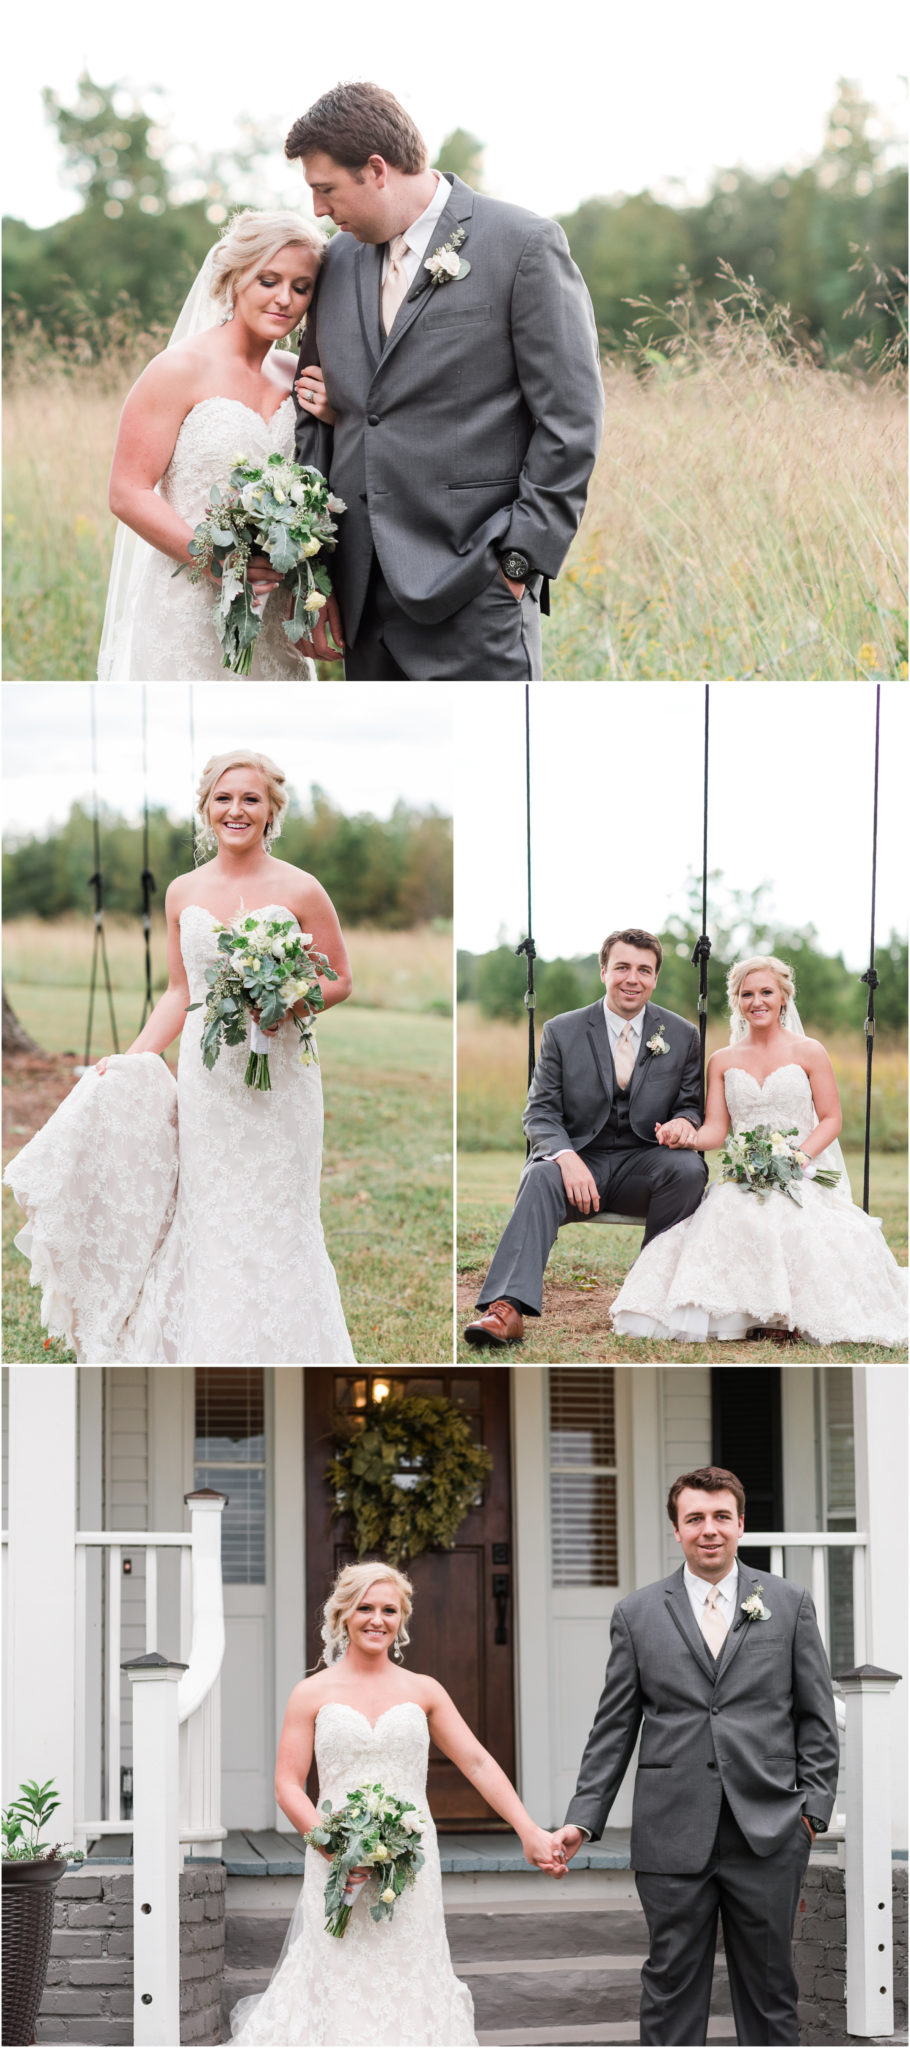 An Ellery Farms Wedding in Woodruff South Carolina Bride and Groom photos